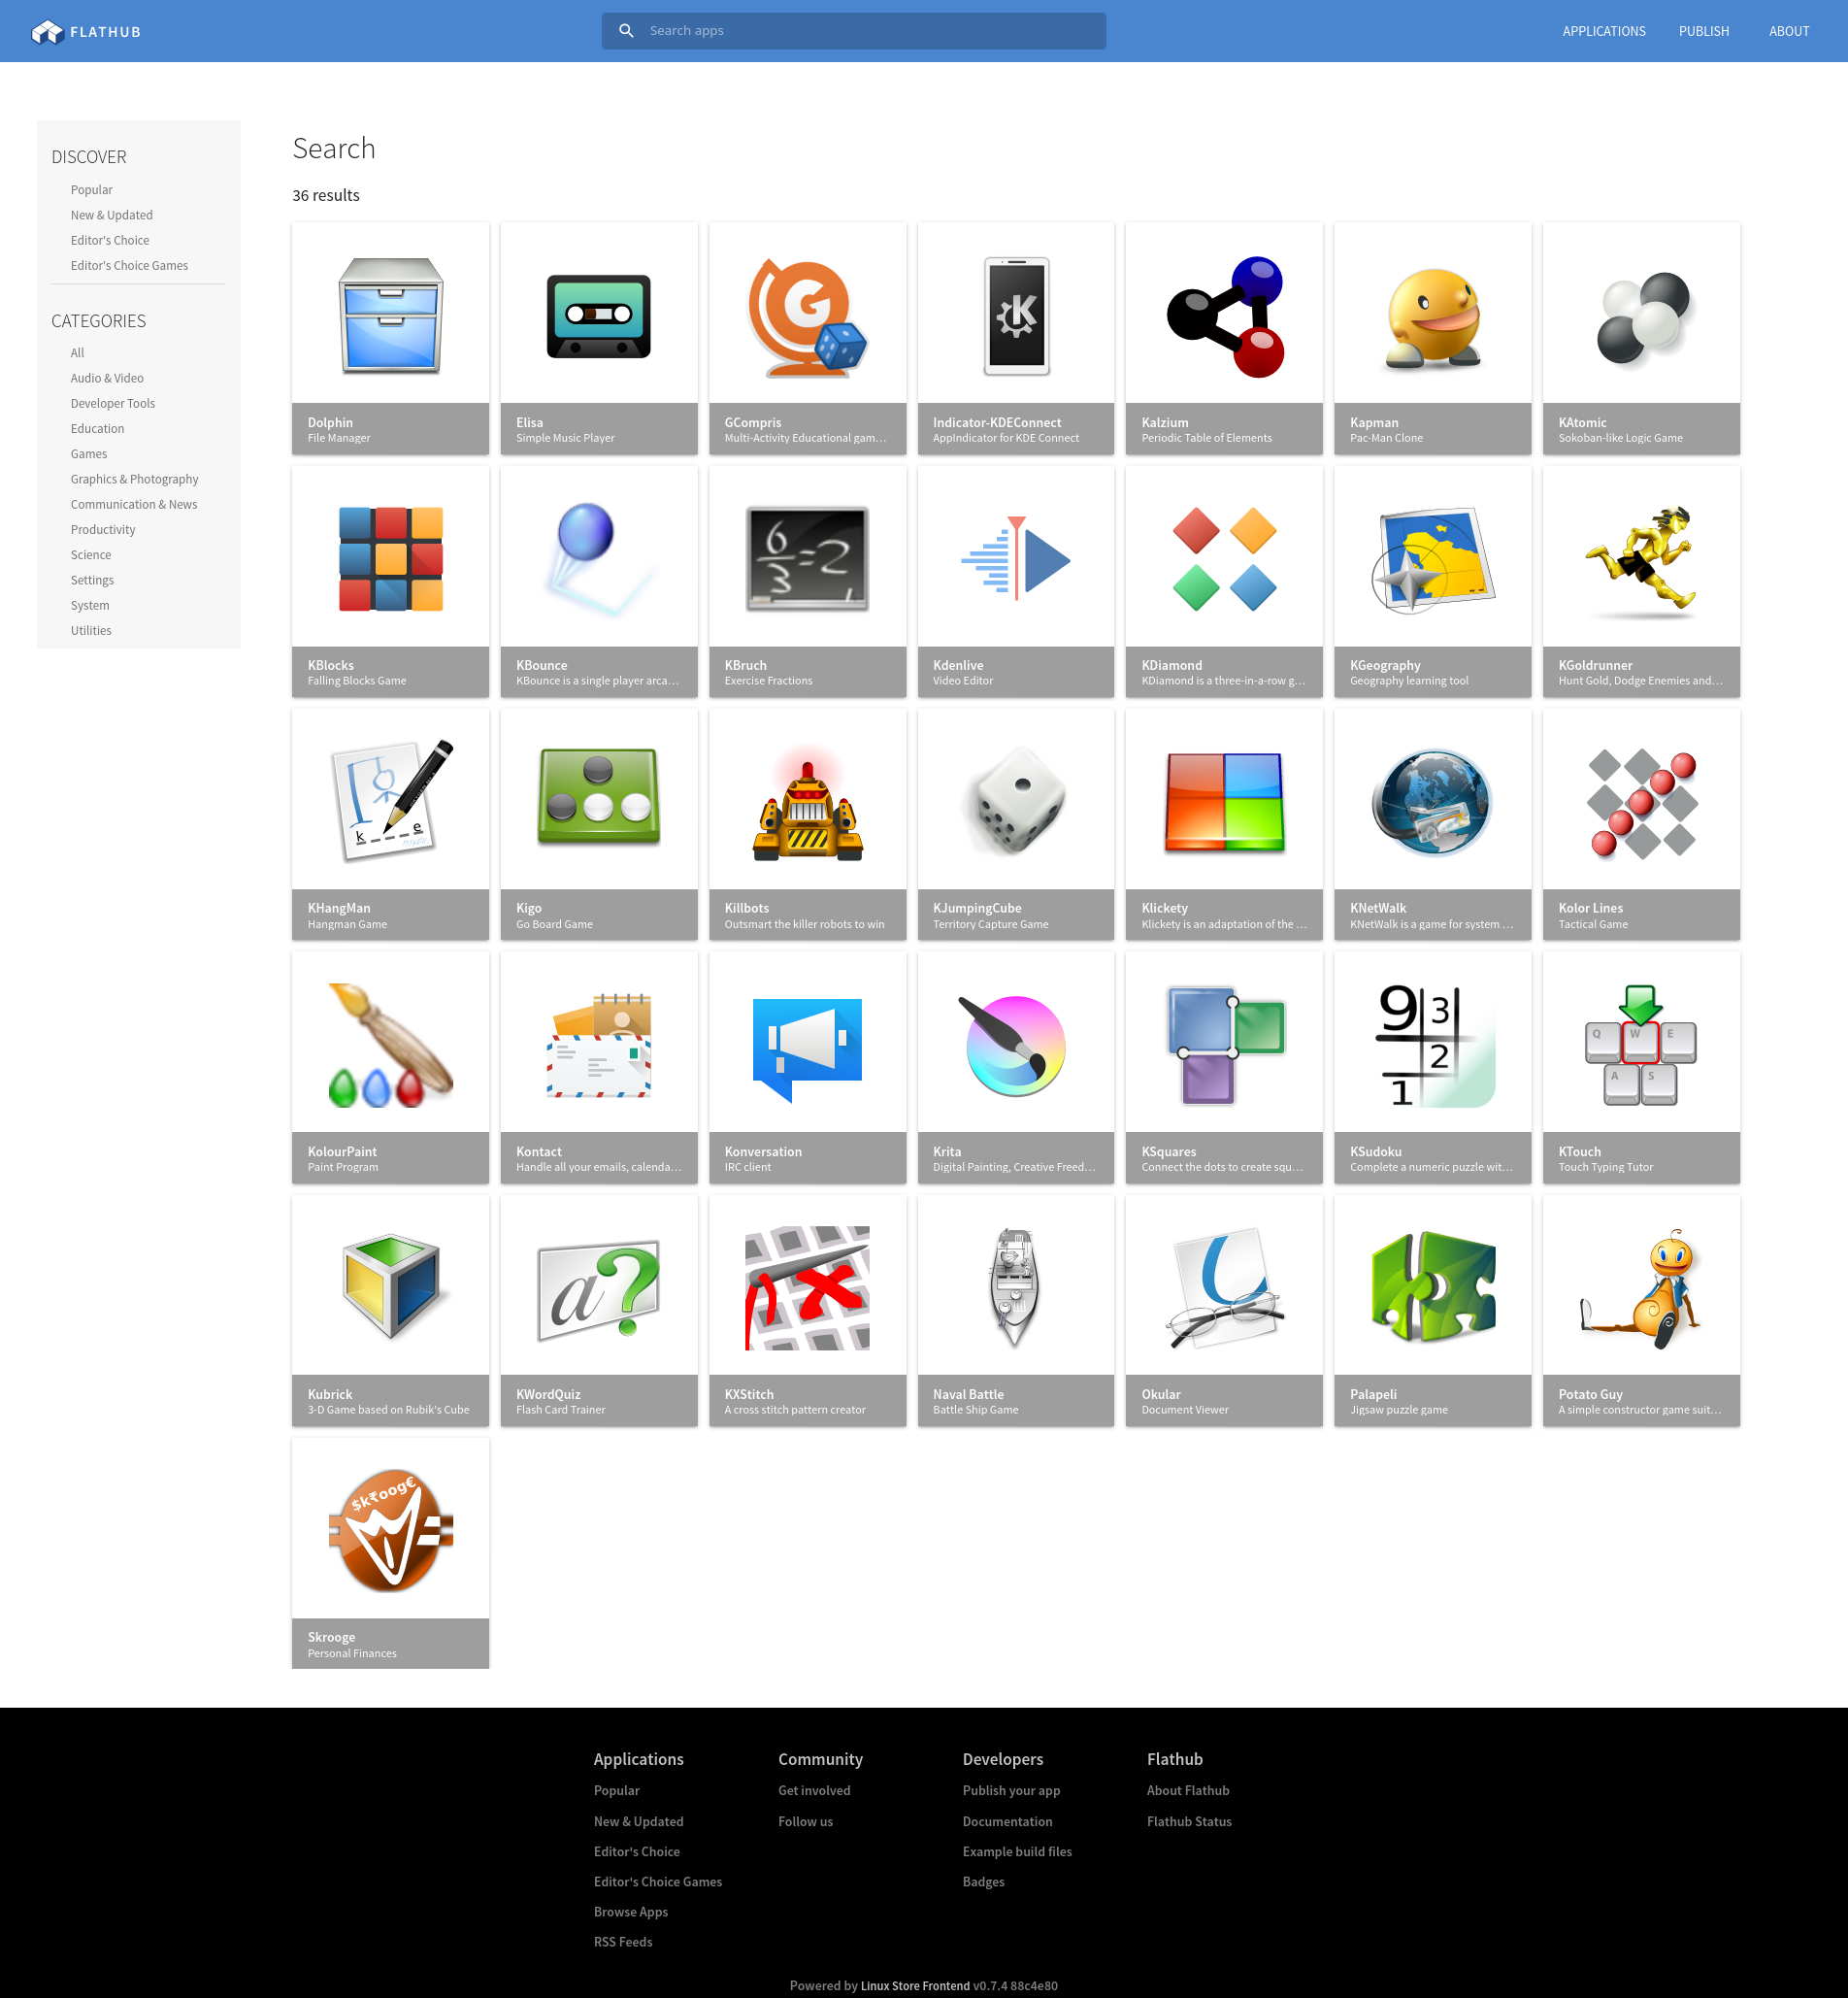 El KDE a la botiga del Flathub